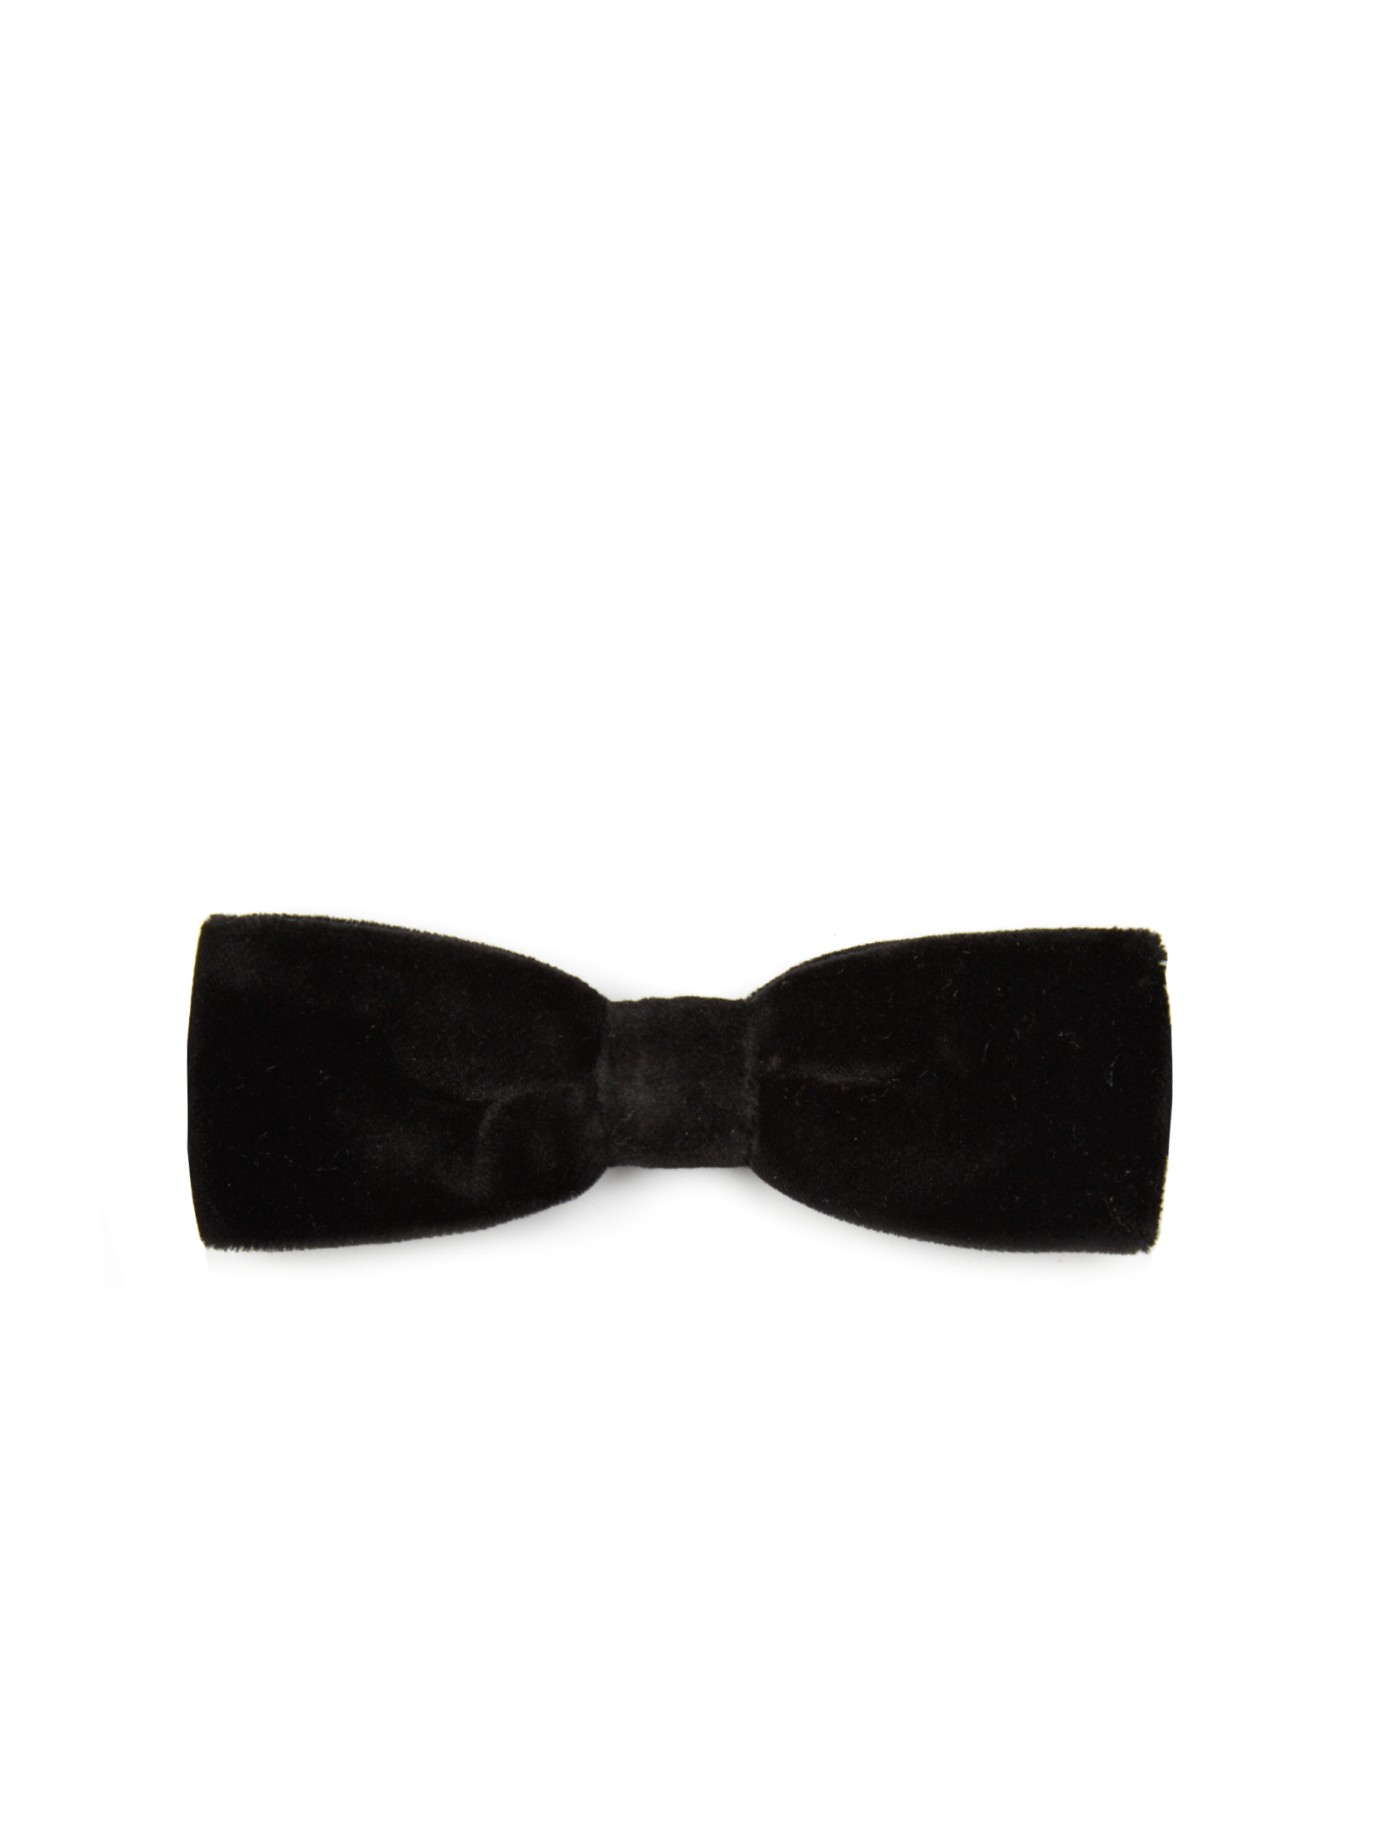 Dolce & Gabbana Velvet Slim Bow Tie in Black for Men - Lyst